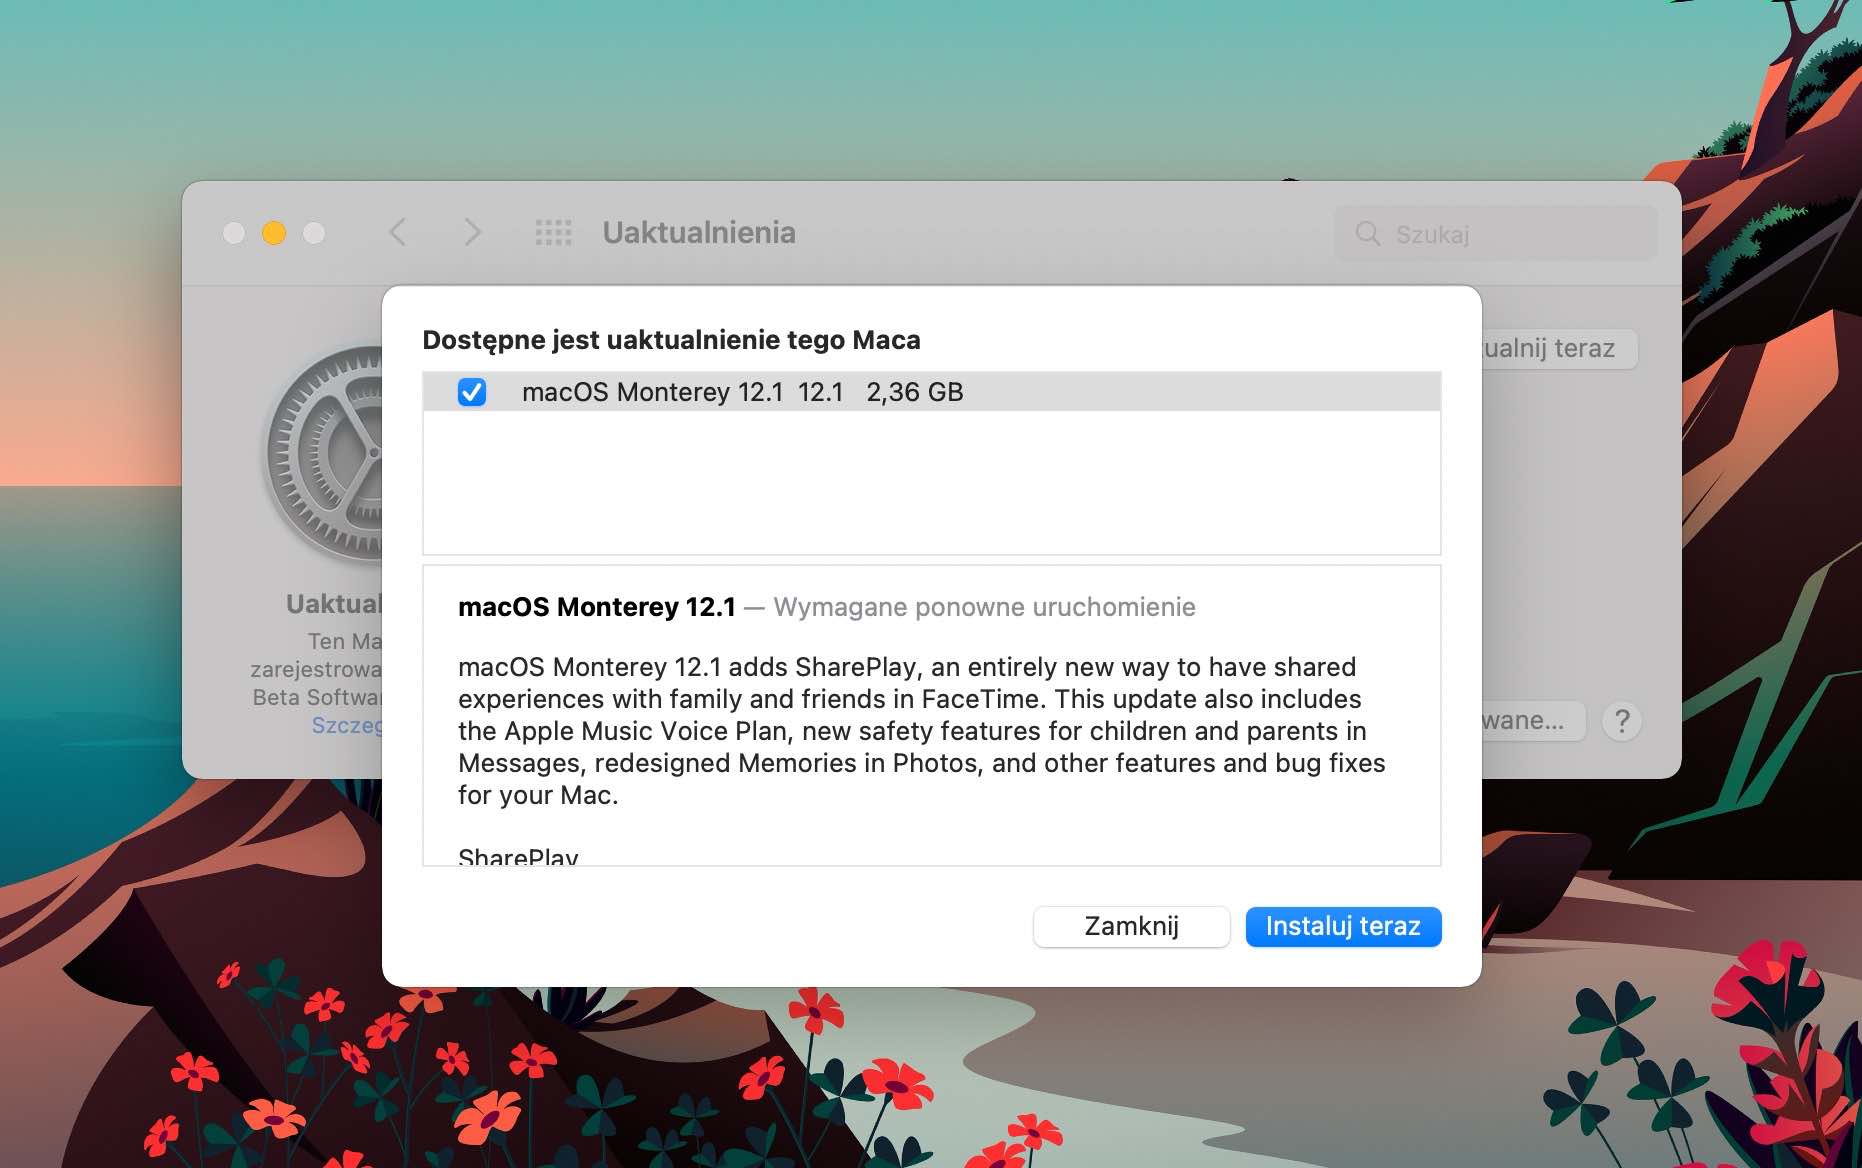 macOS Monterey 12.1 oficjalnie dostępny ciekawostki nowosci w macOS Monterey 12.1, macOS Monterey 12.1, co nowego w macOS Monterey 12.1  Dziś oprócz iOS 15.2 i iPadOS 15.2 Apple wydało także finalną wersję macOS Monterey 12.1. Co zostało zmienione? macos12.1